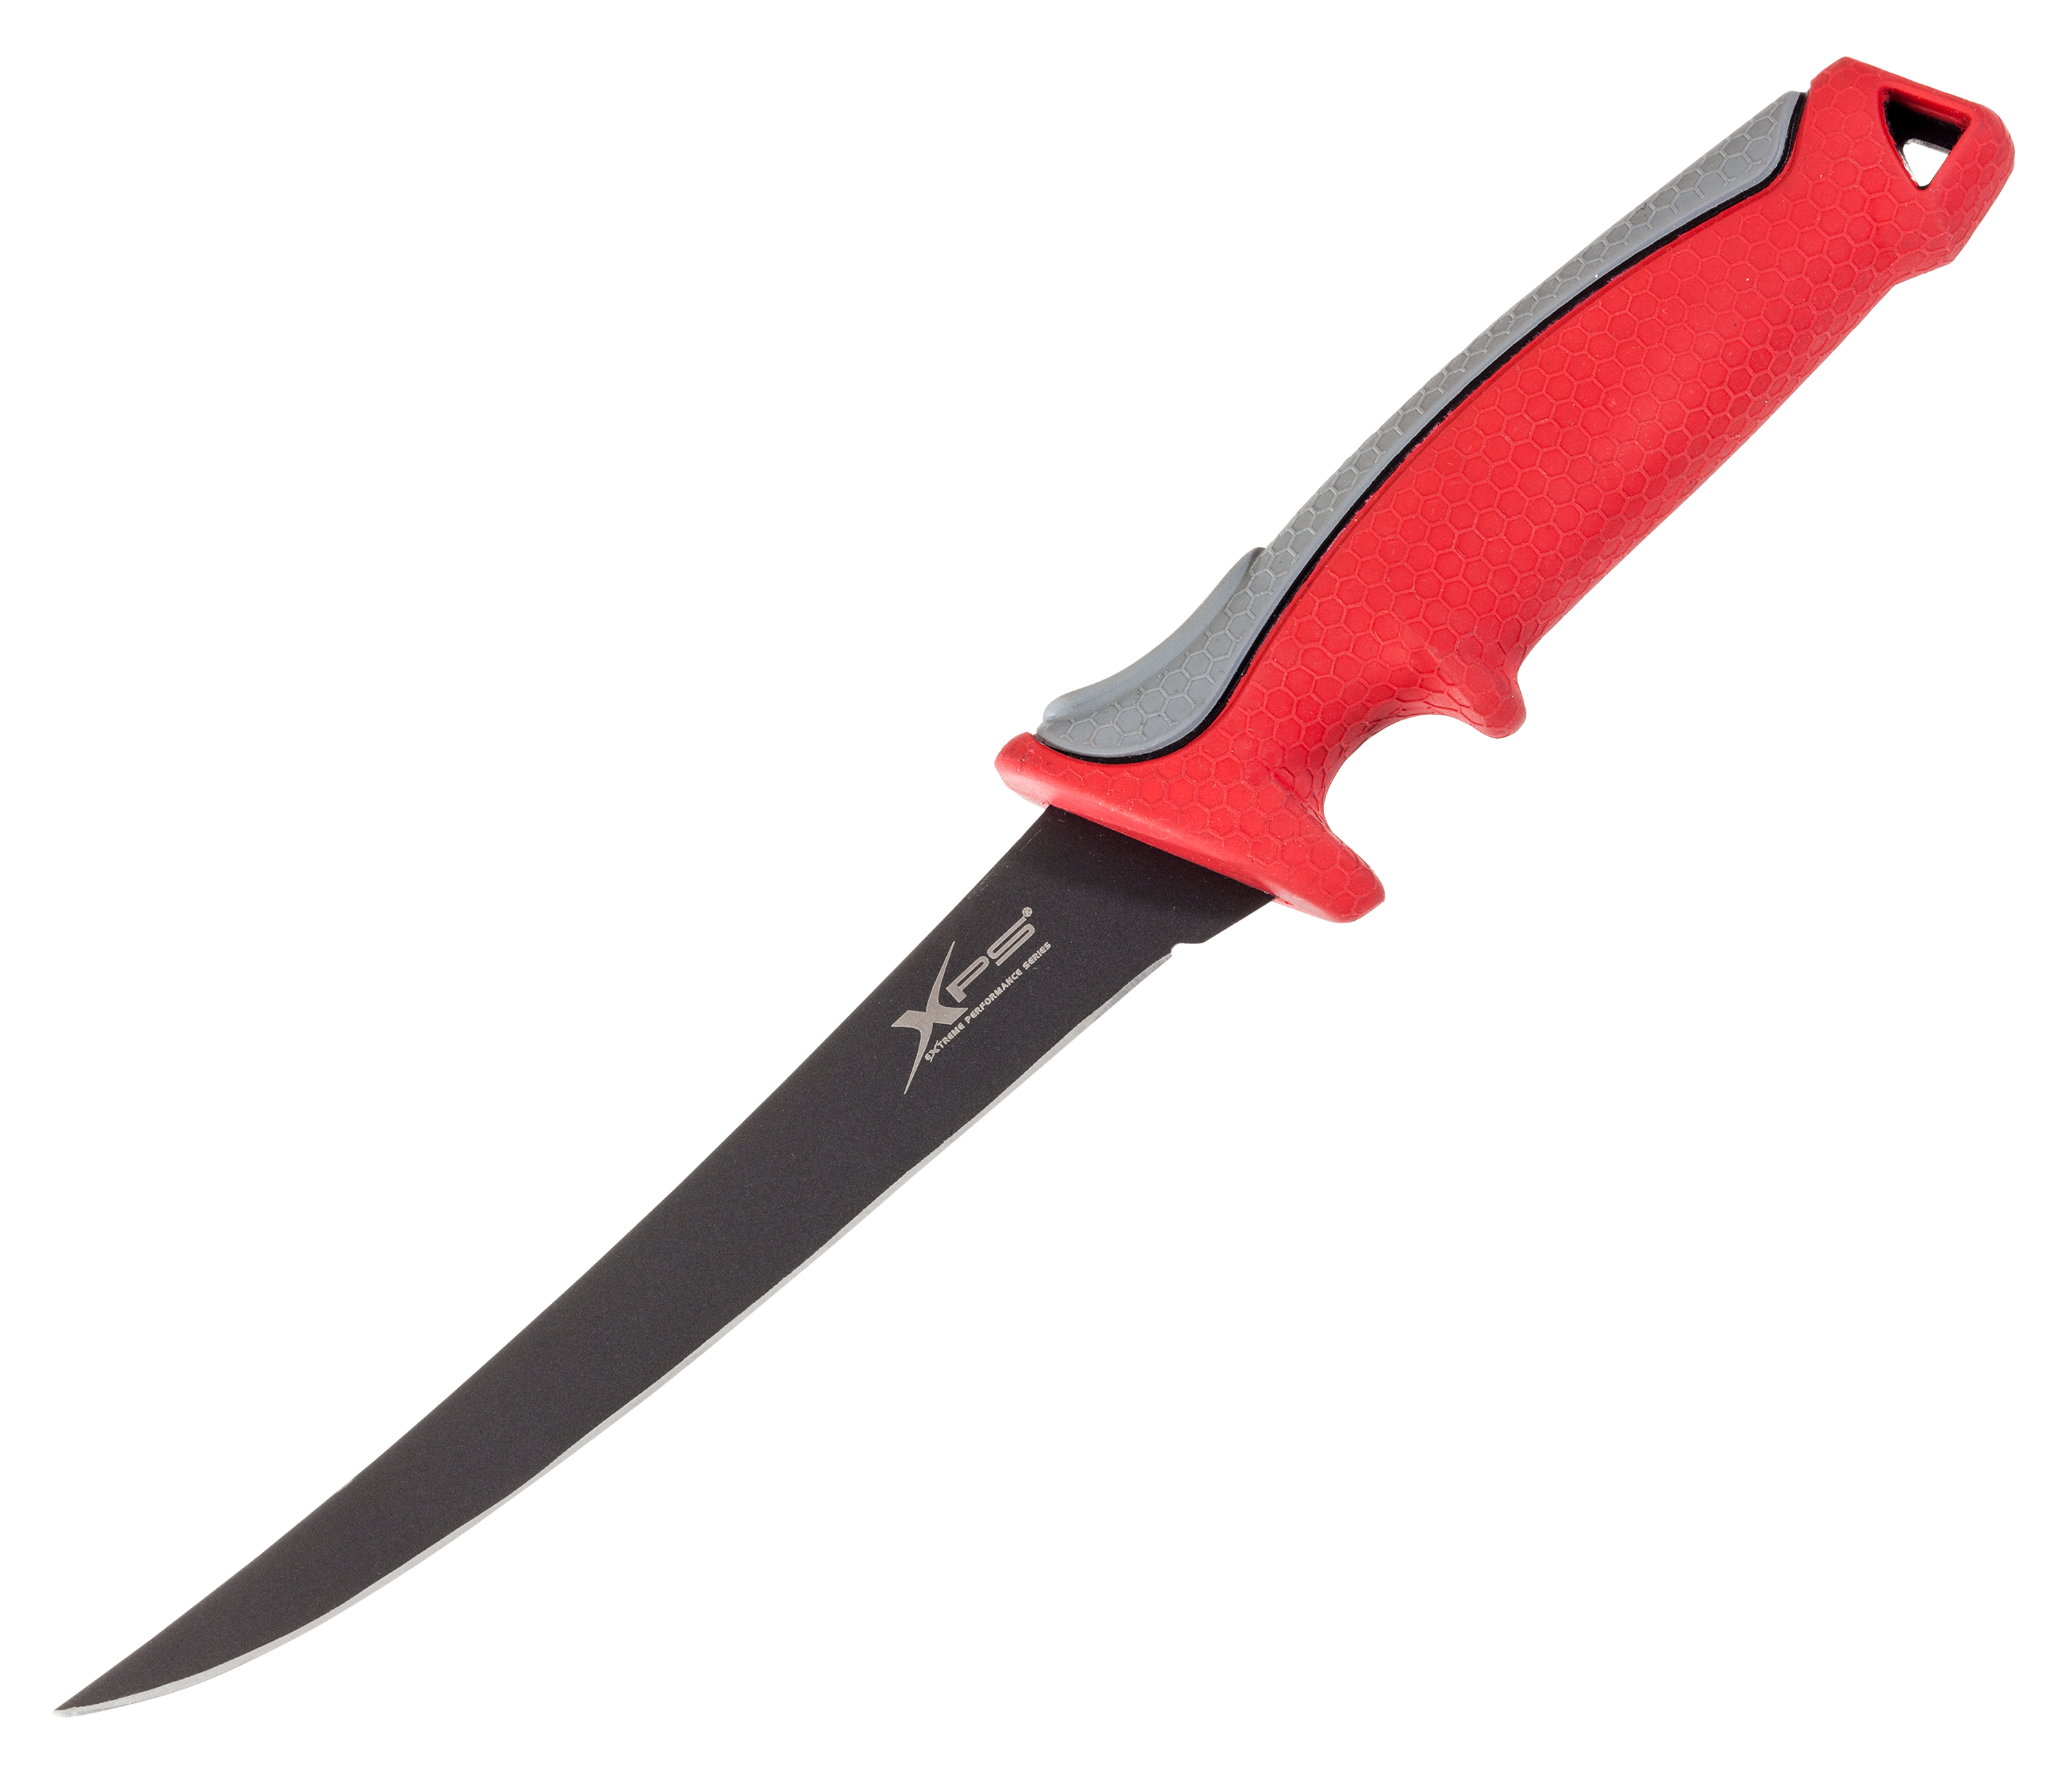 Bubba Blade 9.00 in Flex Fillet Knife